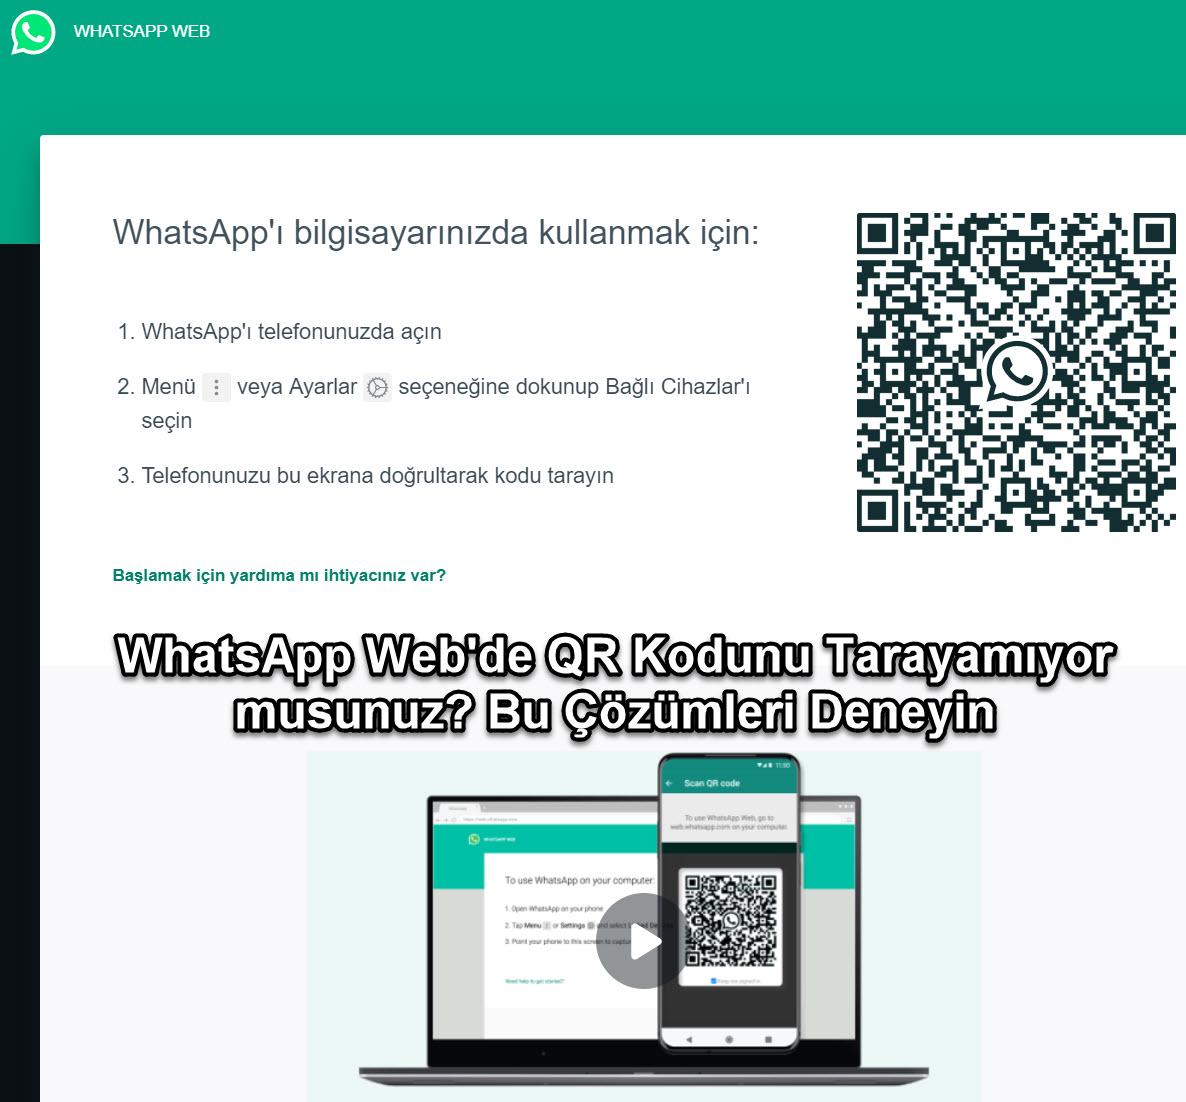 Whatsapp Webde Qr Kodunu Taraamiyor Musunuz Bu Cozumleri Deneyin 1 15